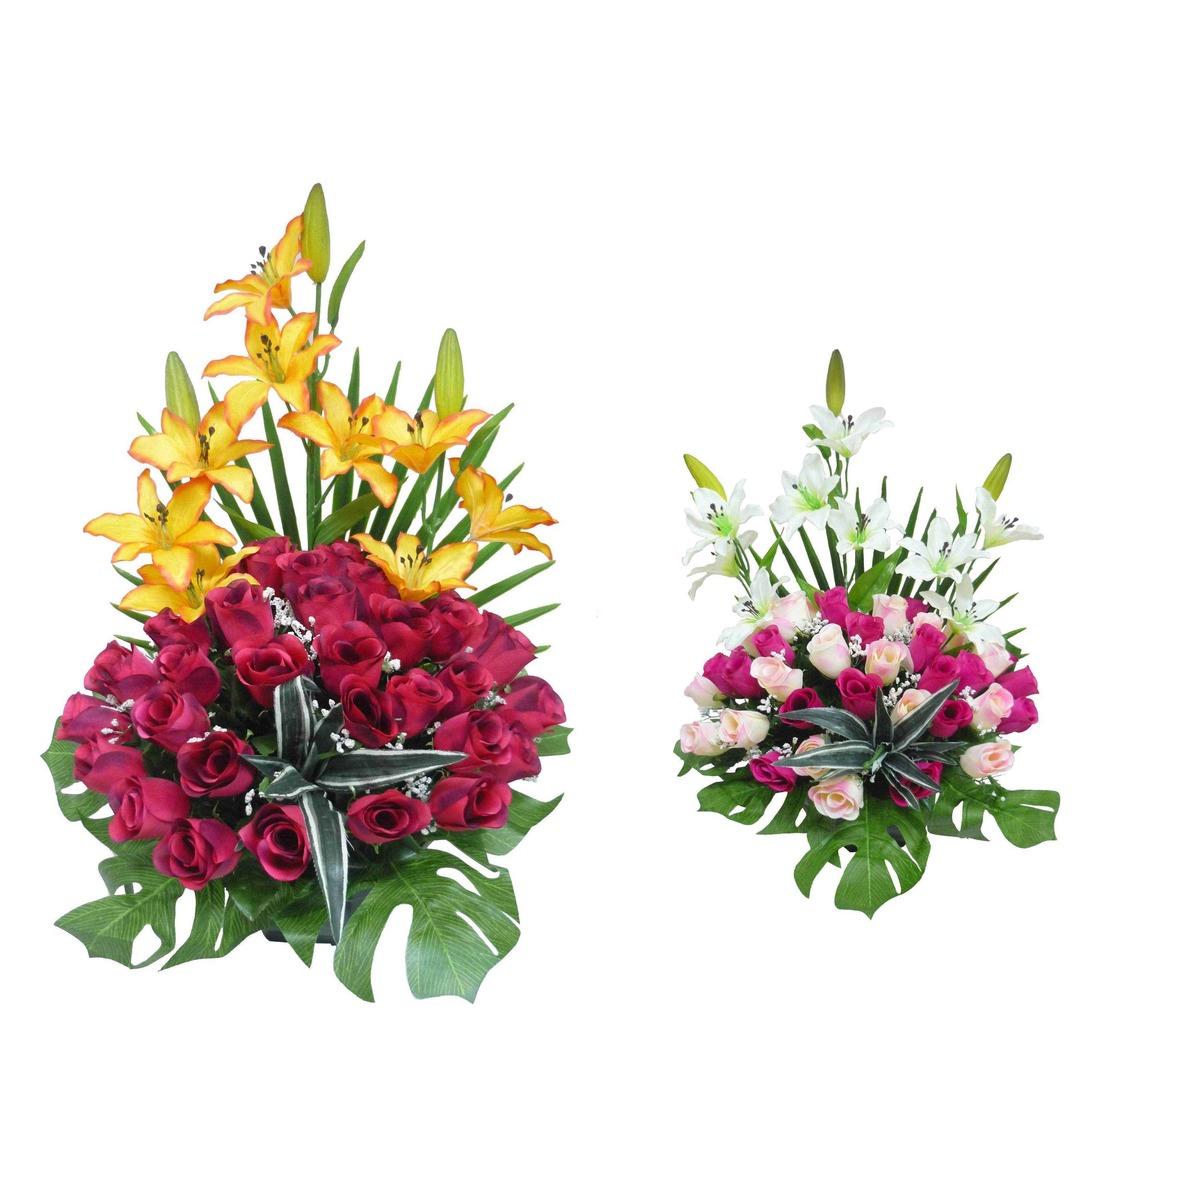 Coupe roses + lys + palmes - Hauteur 51 cm - Différents modèles